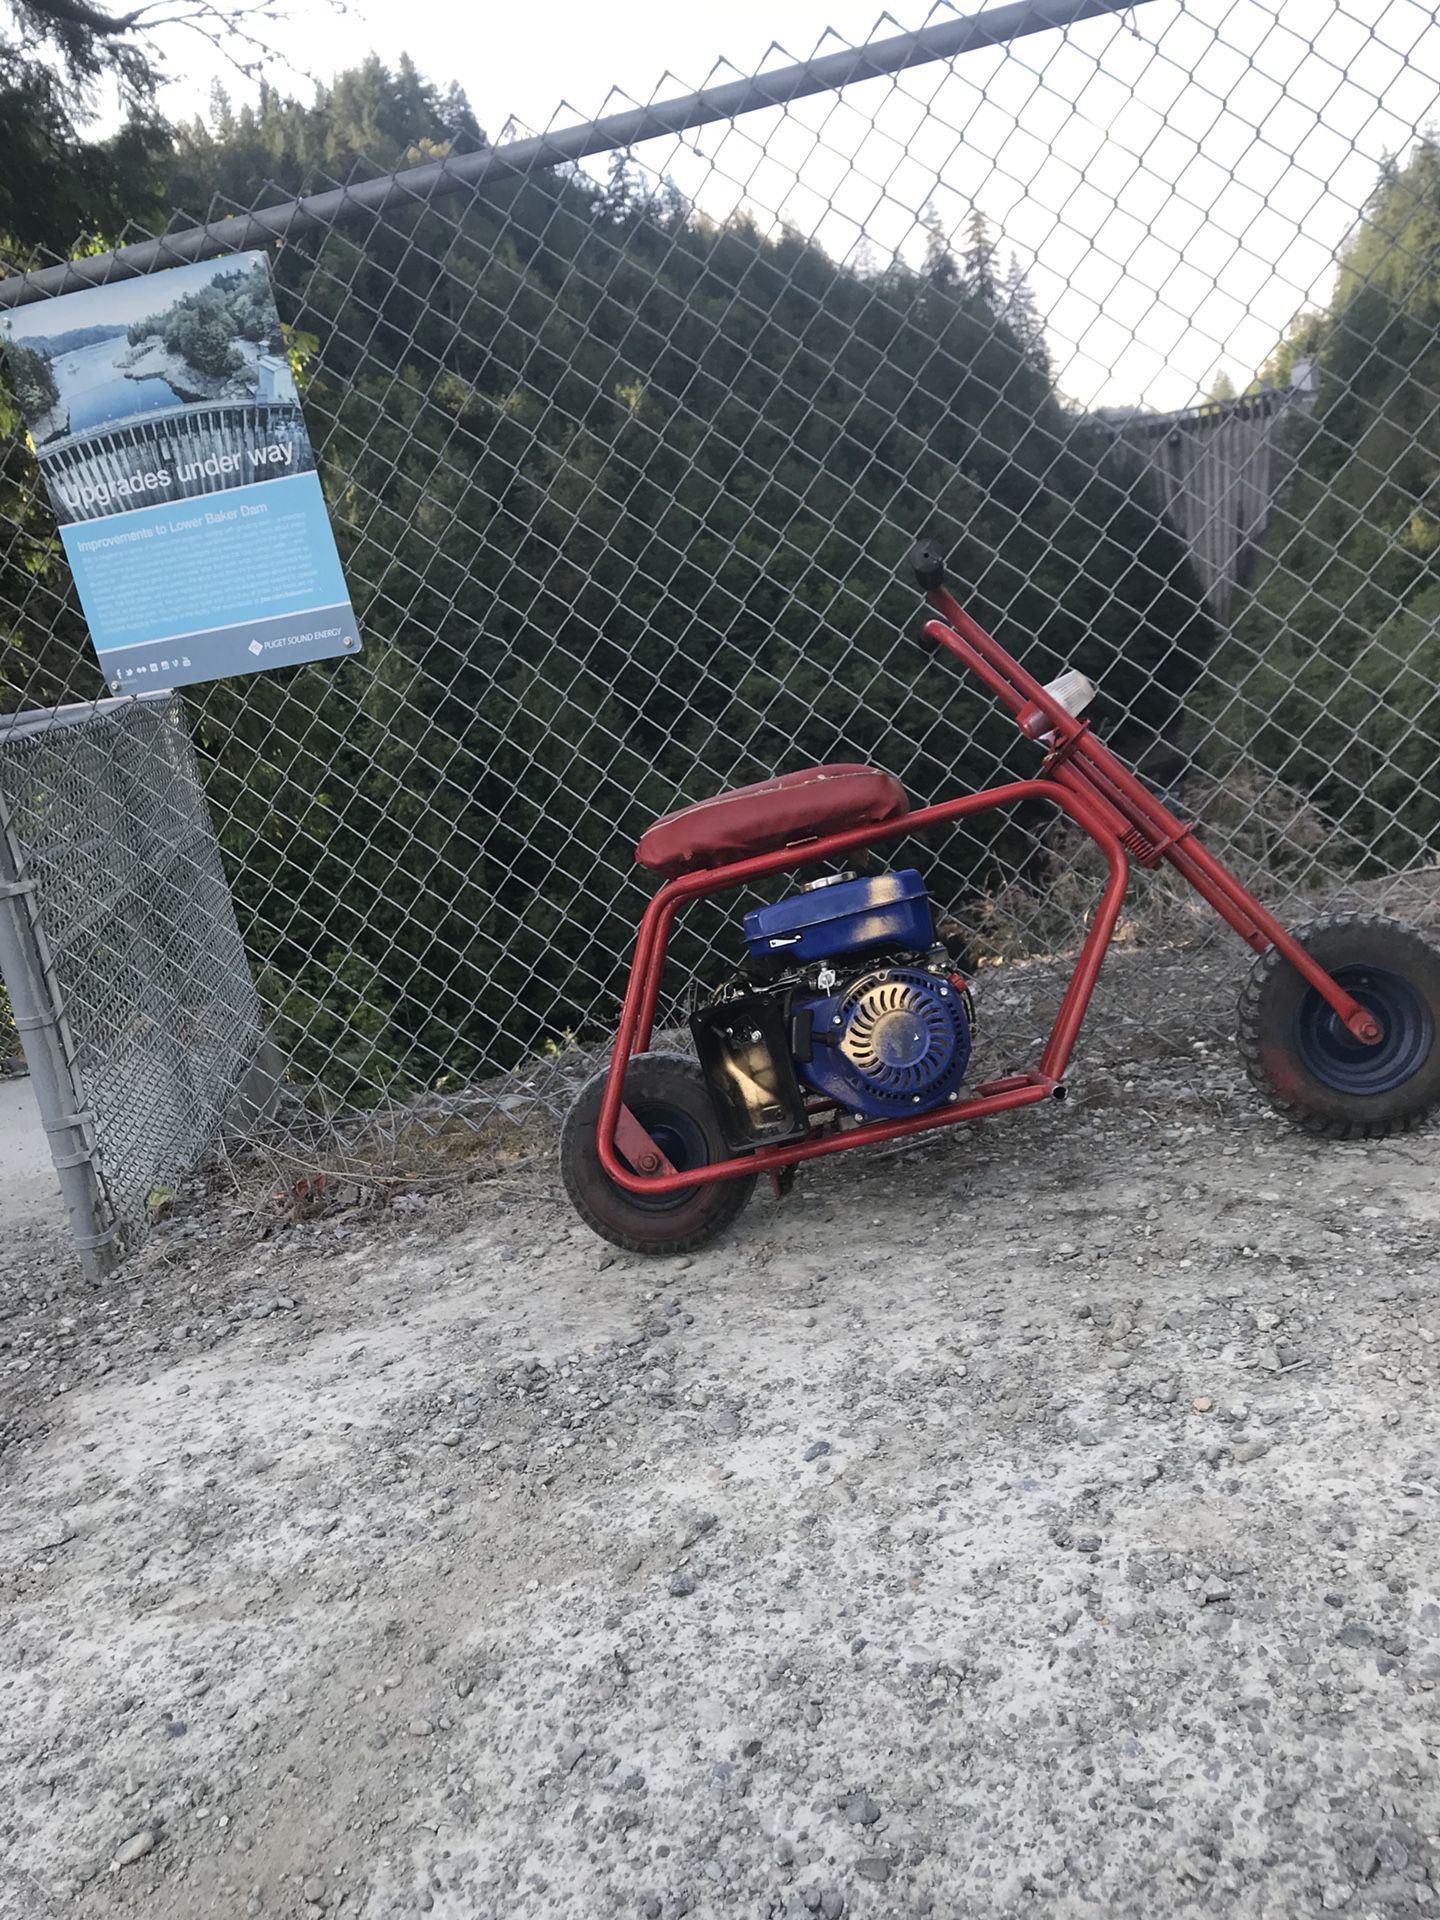 Mini bike